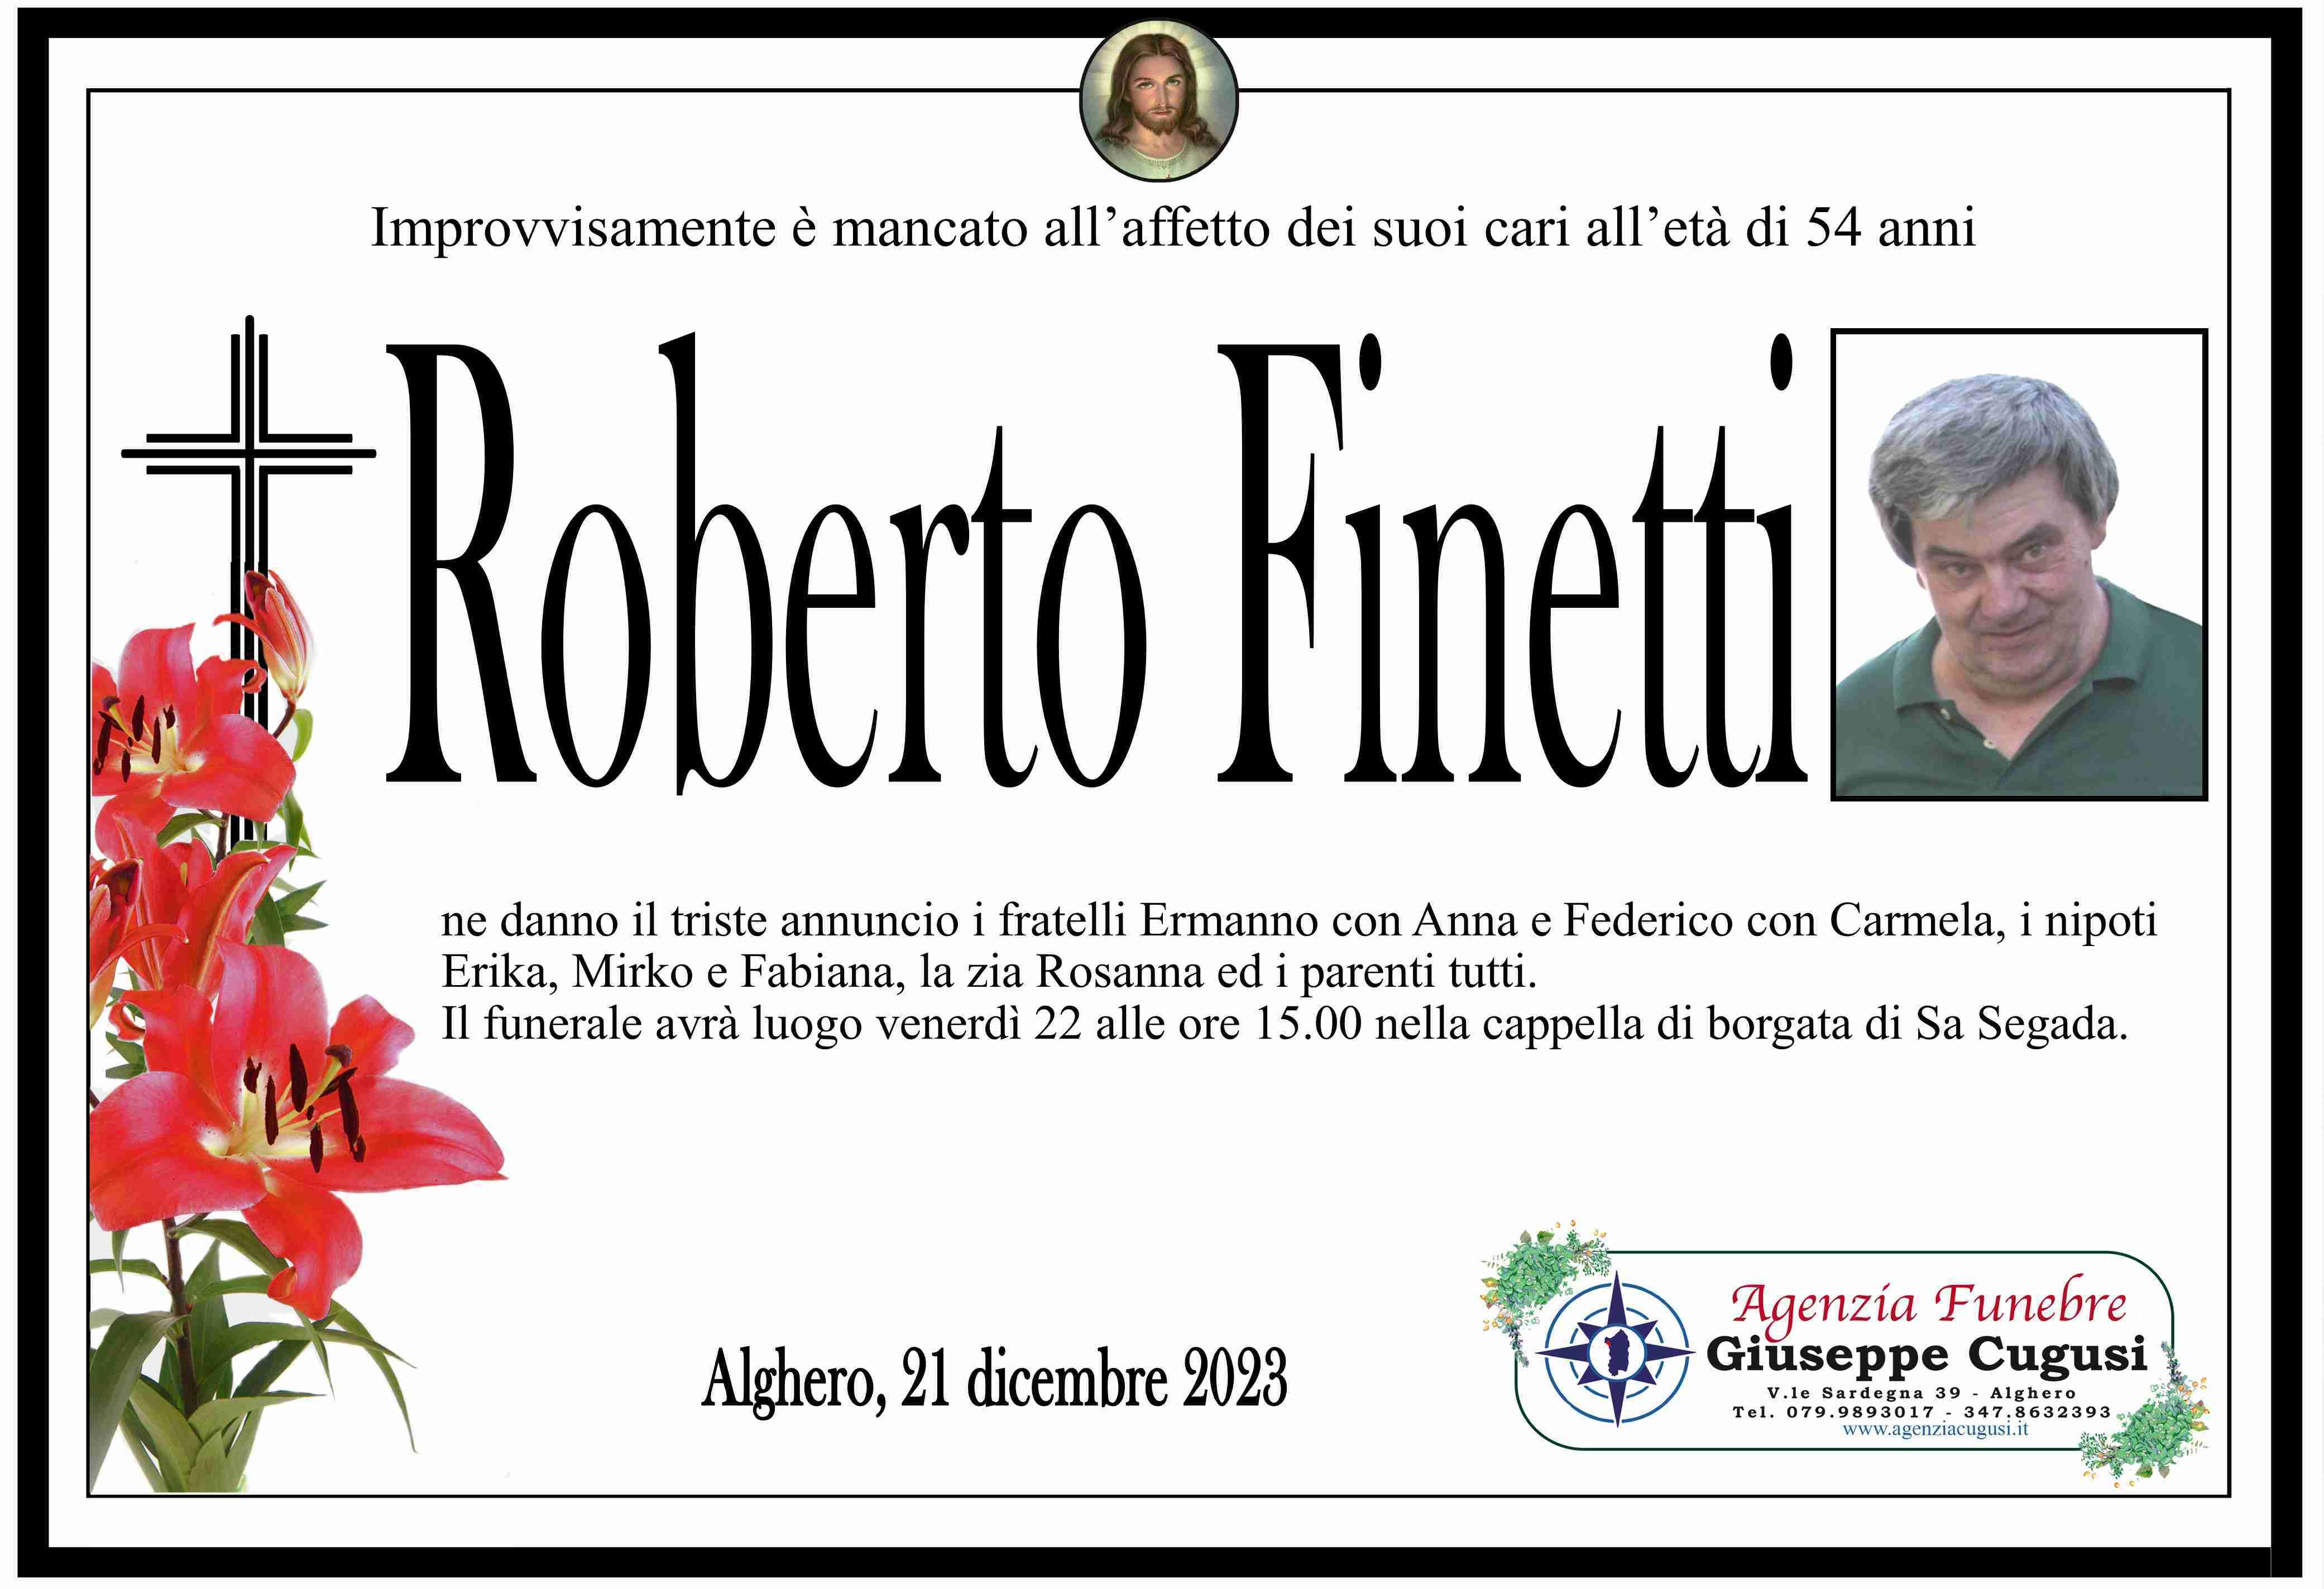 Roberto Finetti